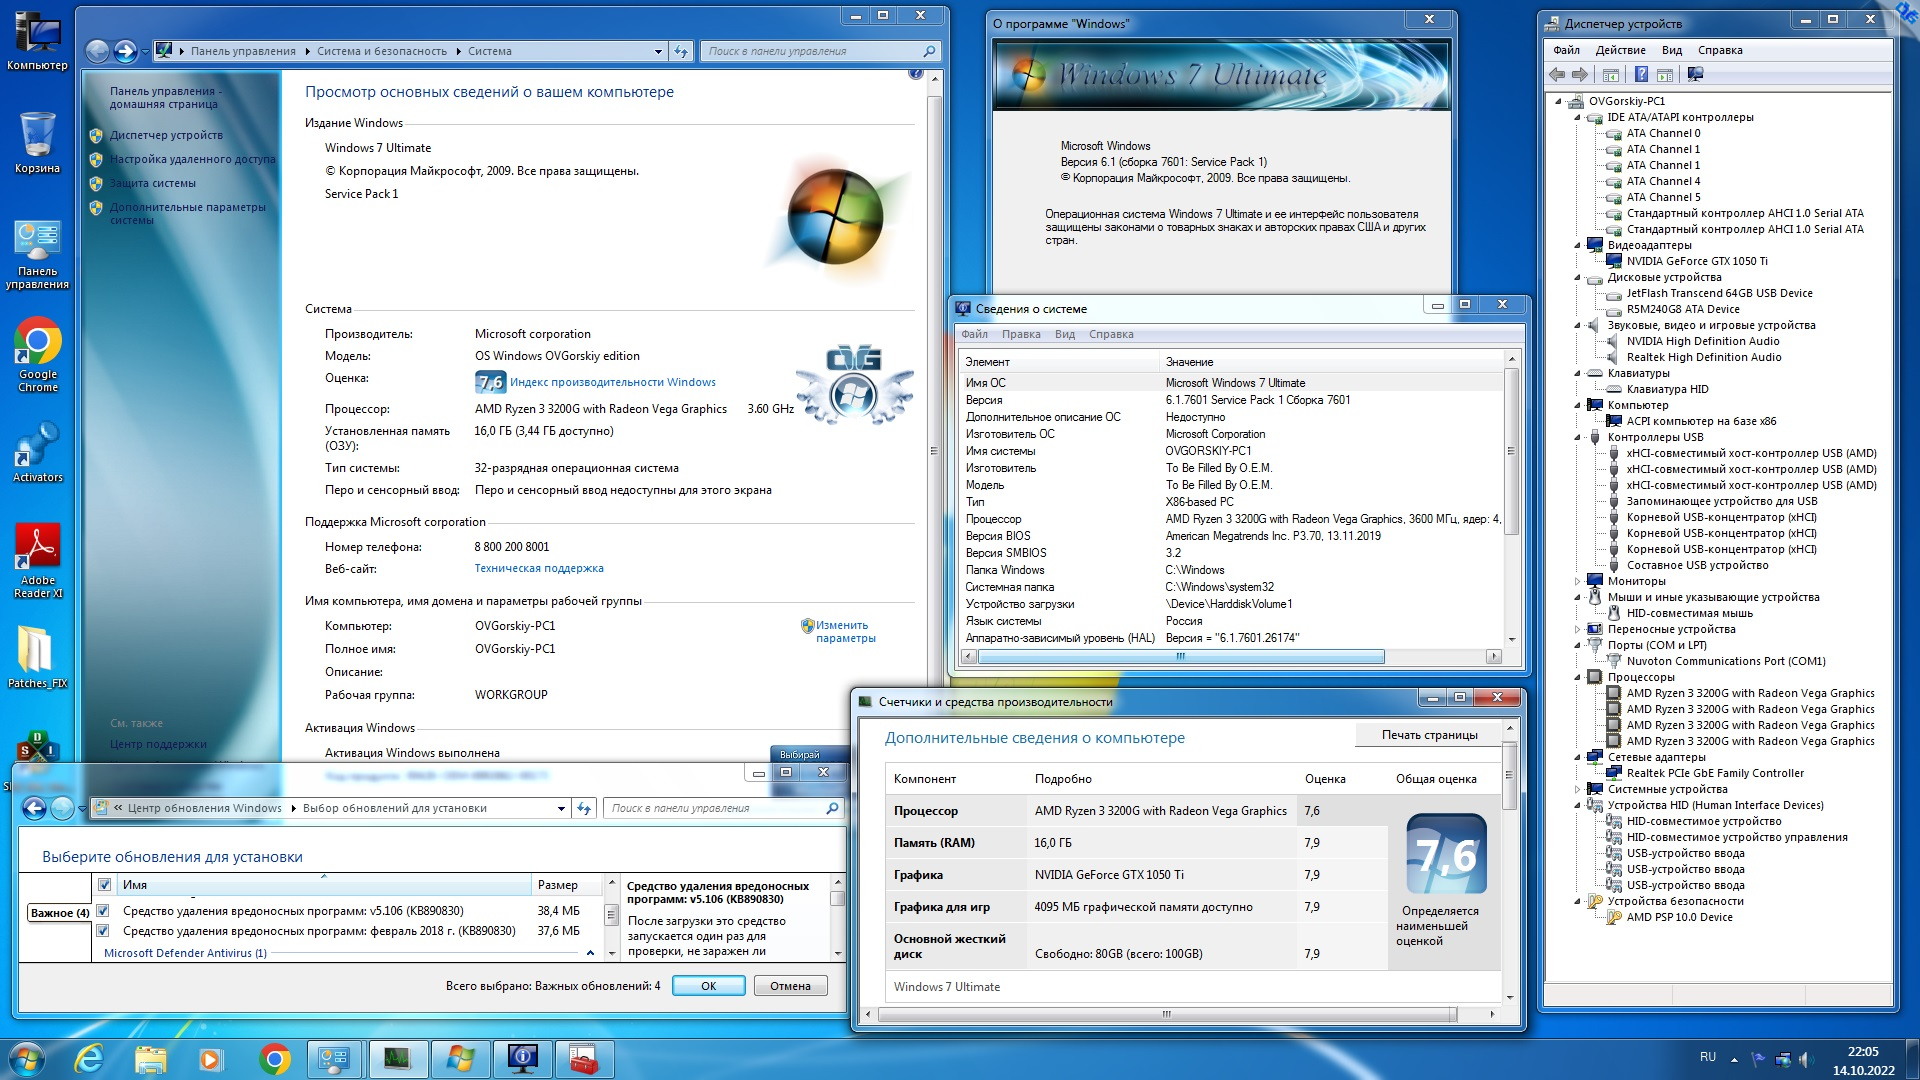 Microsoft® Windows® 7 Ultimate Ru x86 SP1 7DB by OVGorskiy 02.2023 1DVD